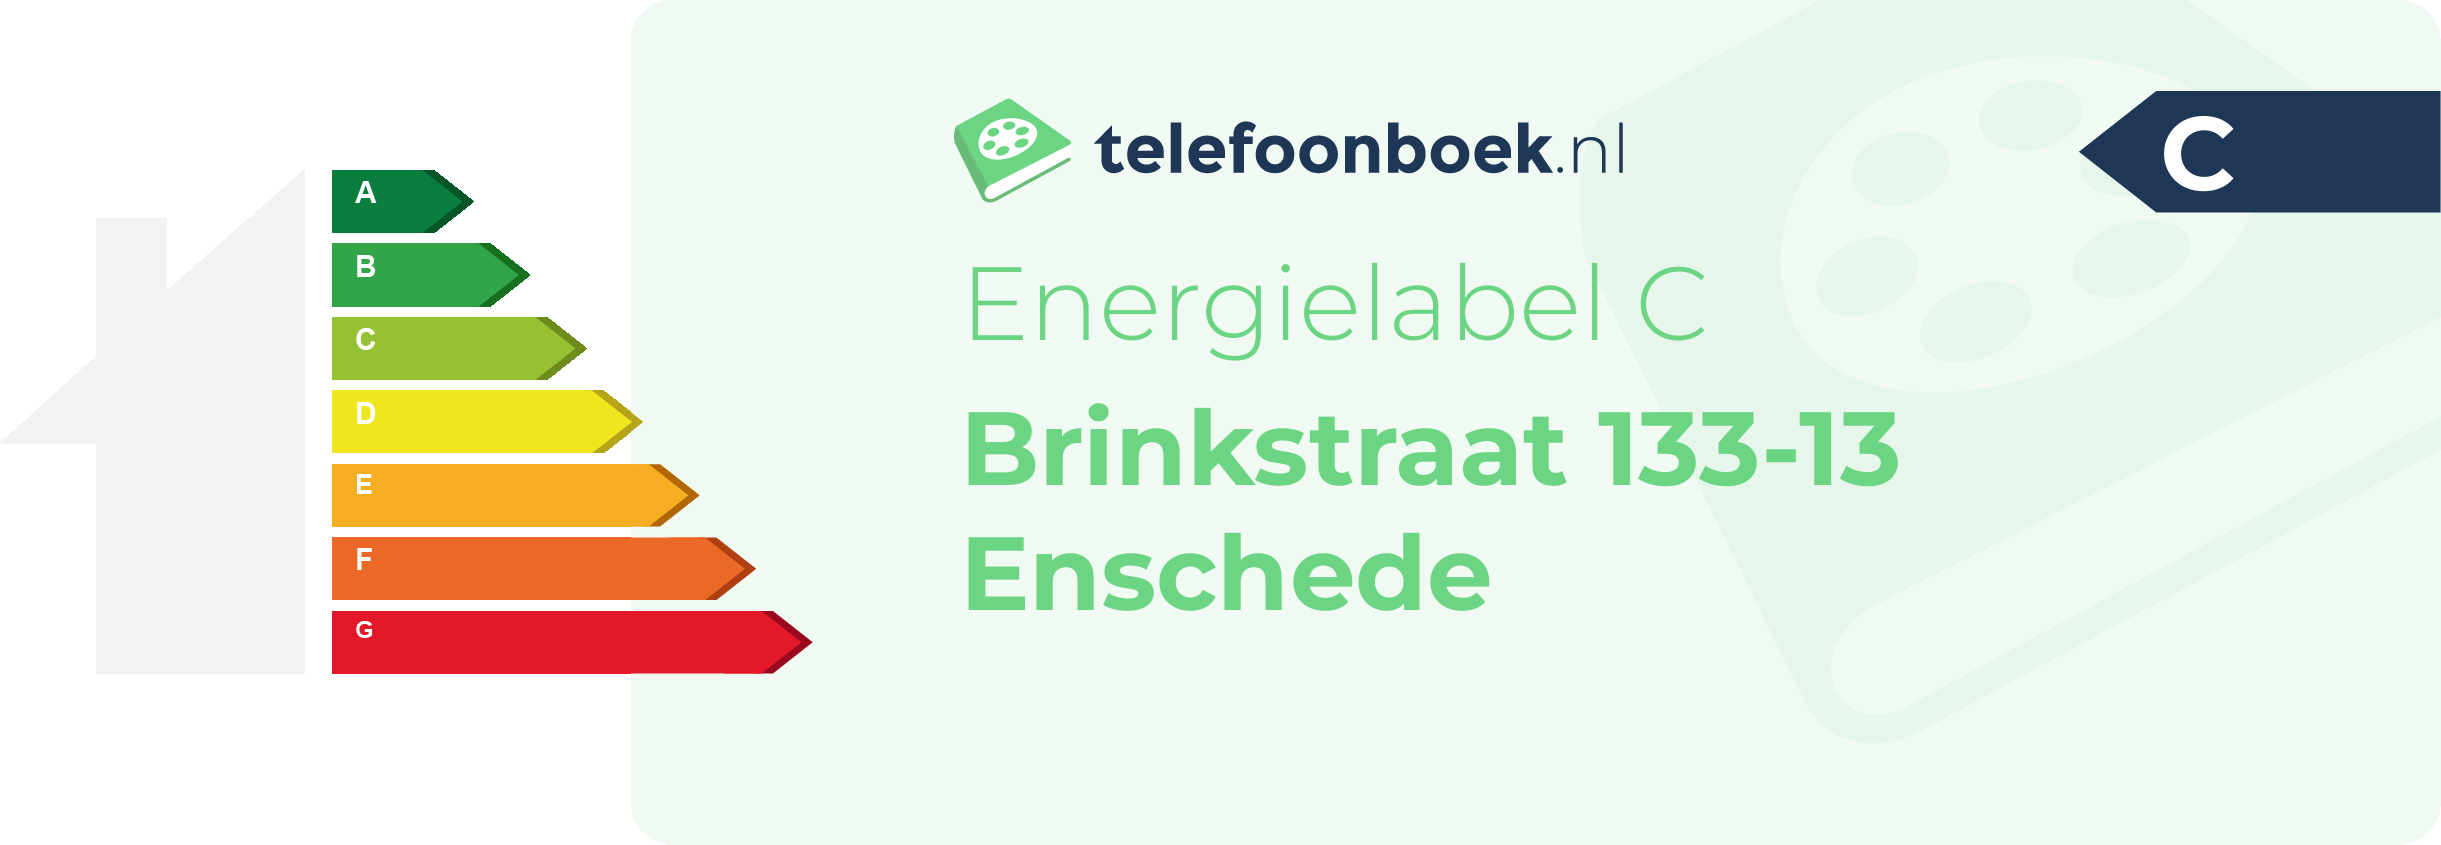 Energielabel Brinkstraat 133-13 Enschede